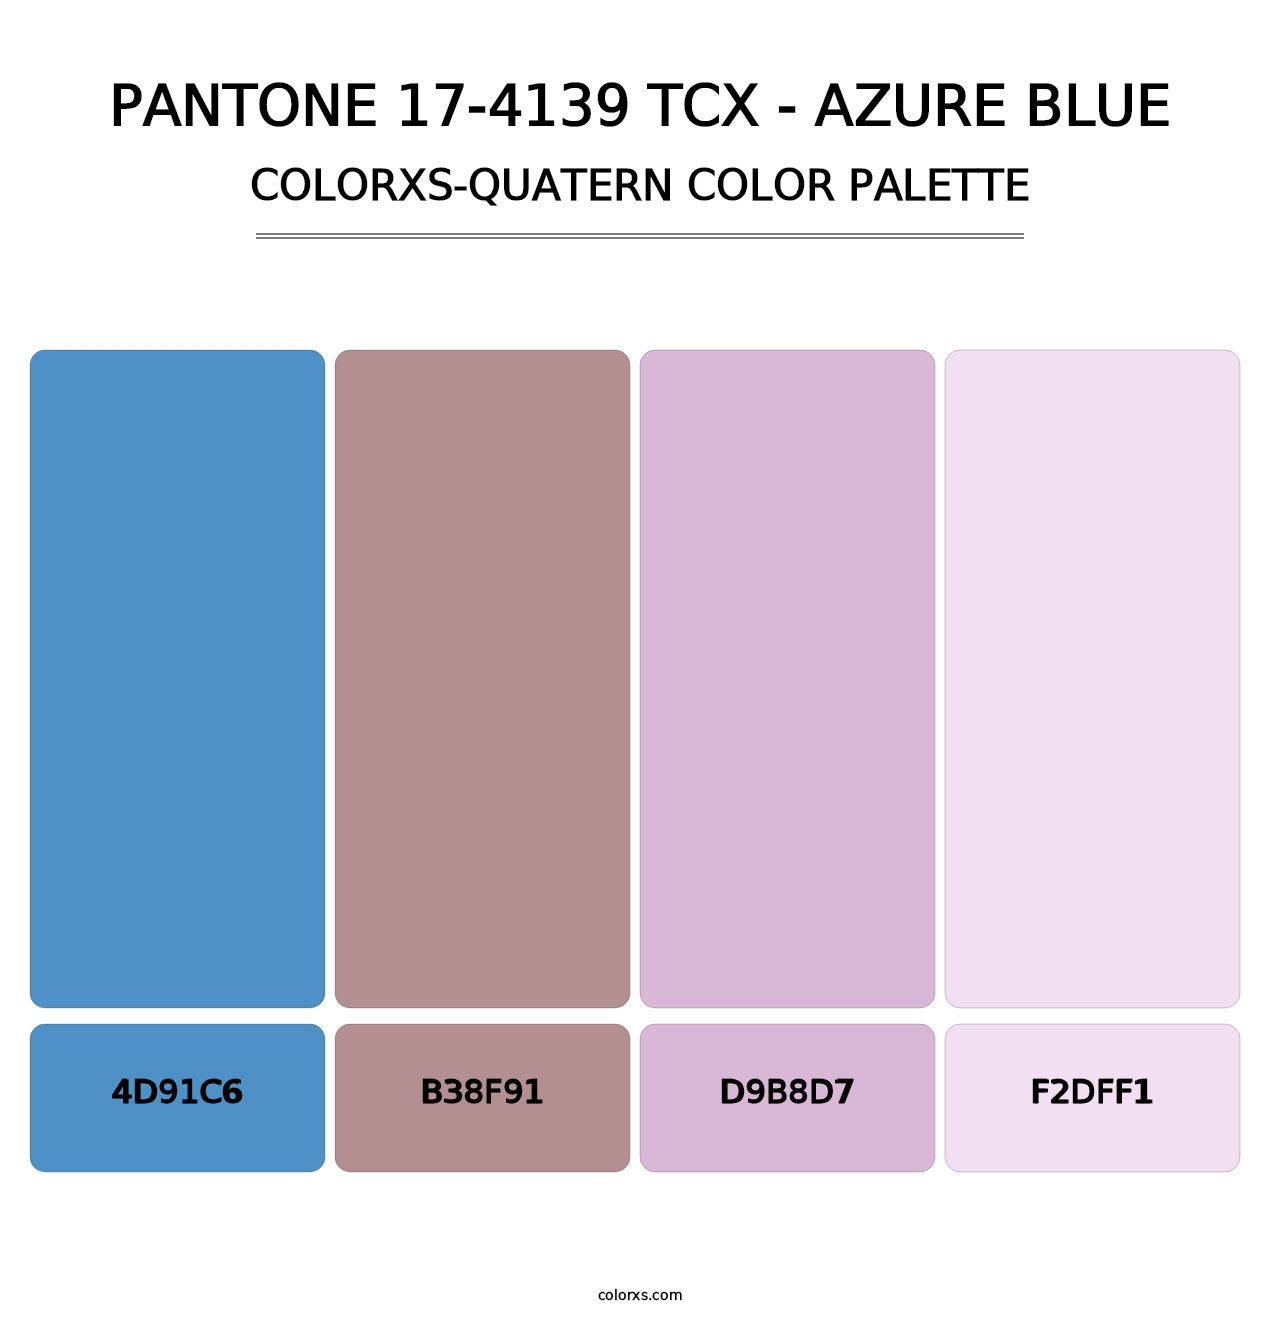 PANTONE 17-4139 TCX - Azure Blue - Colorxs Quatern Palette